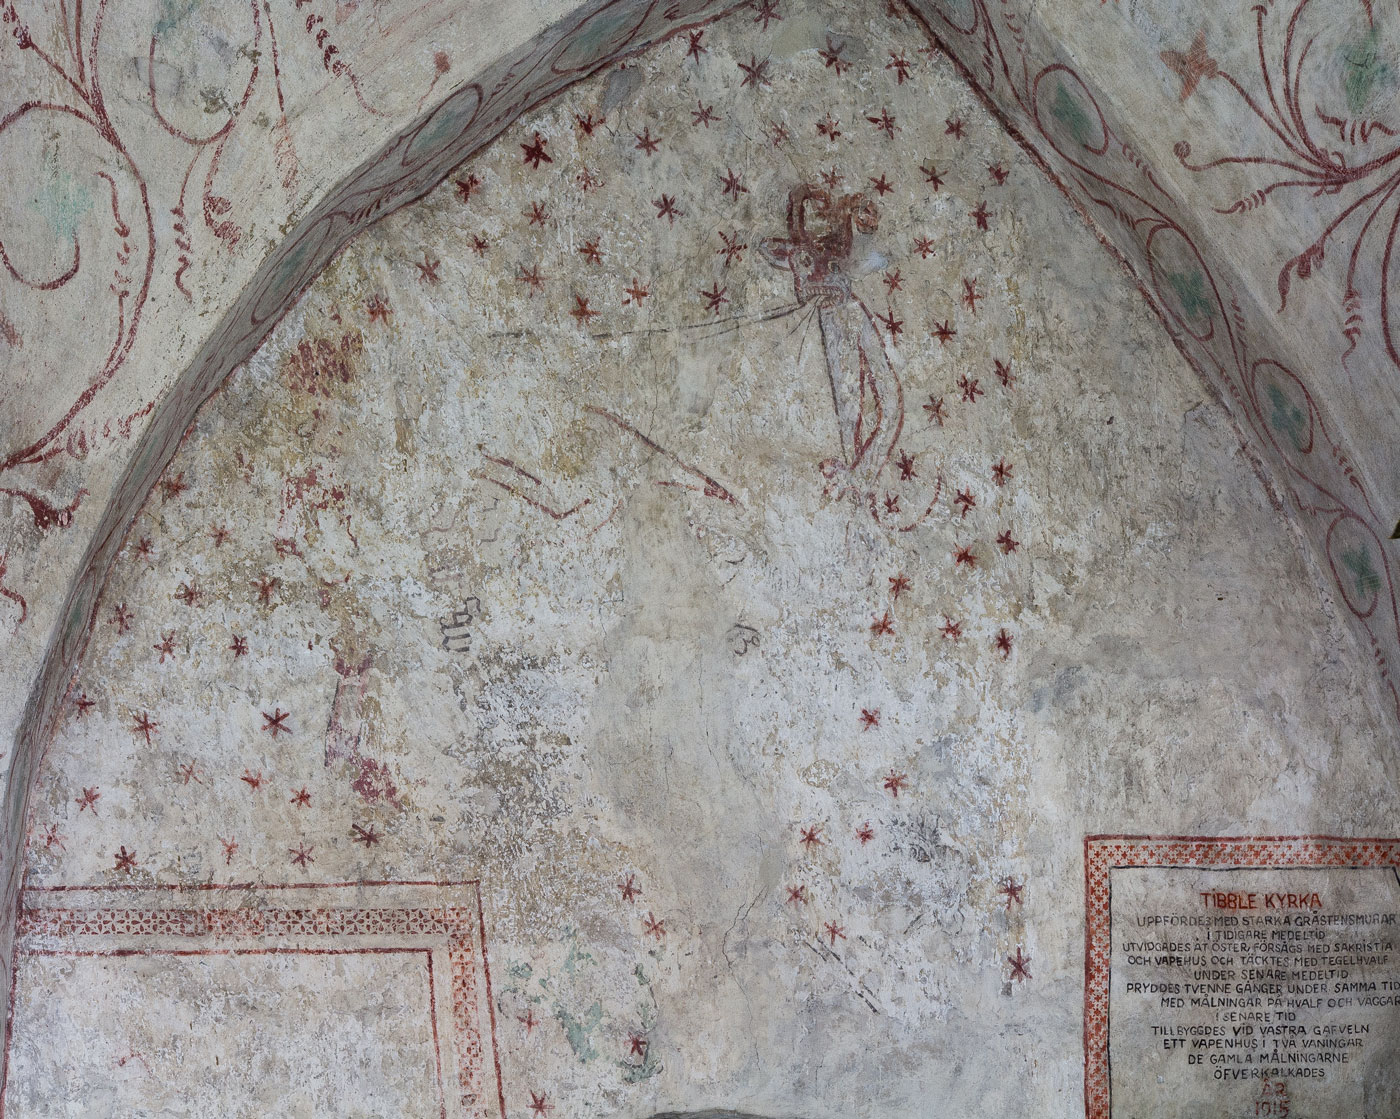 Målning från 1400-talets mitt: Skvallret i kyrkan. Två djävlar sysselsatta med det pergament på vilket skvallret tecknades ner - Håbo-Tibble kyrka